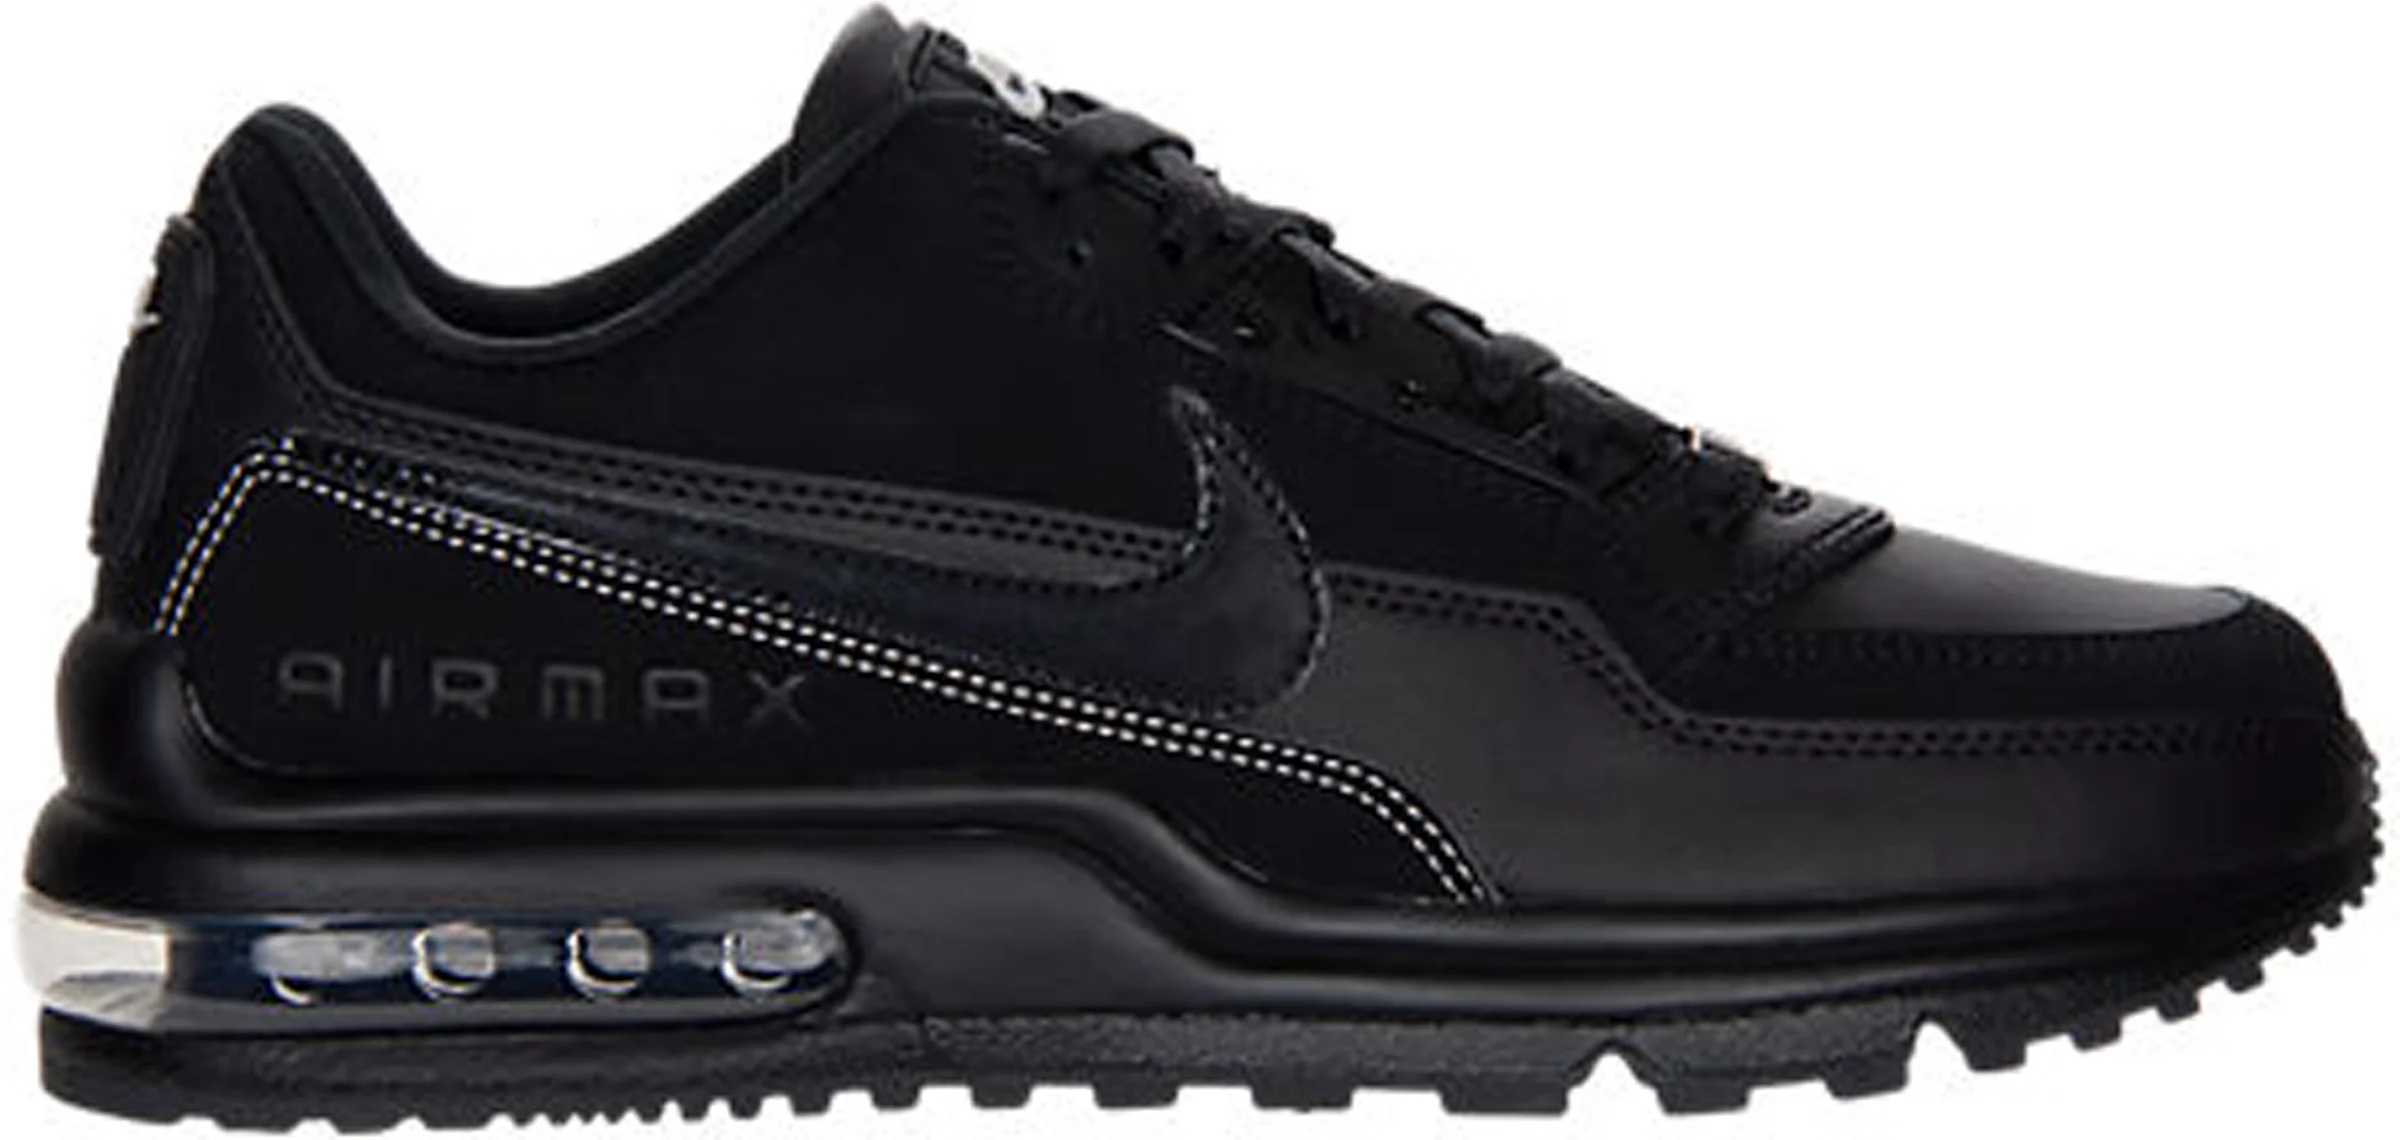 Nike Air Max LTD Triple Black メンズ - 316376-003 - JP